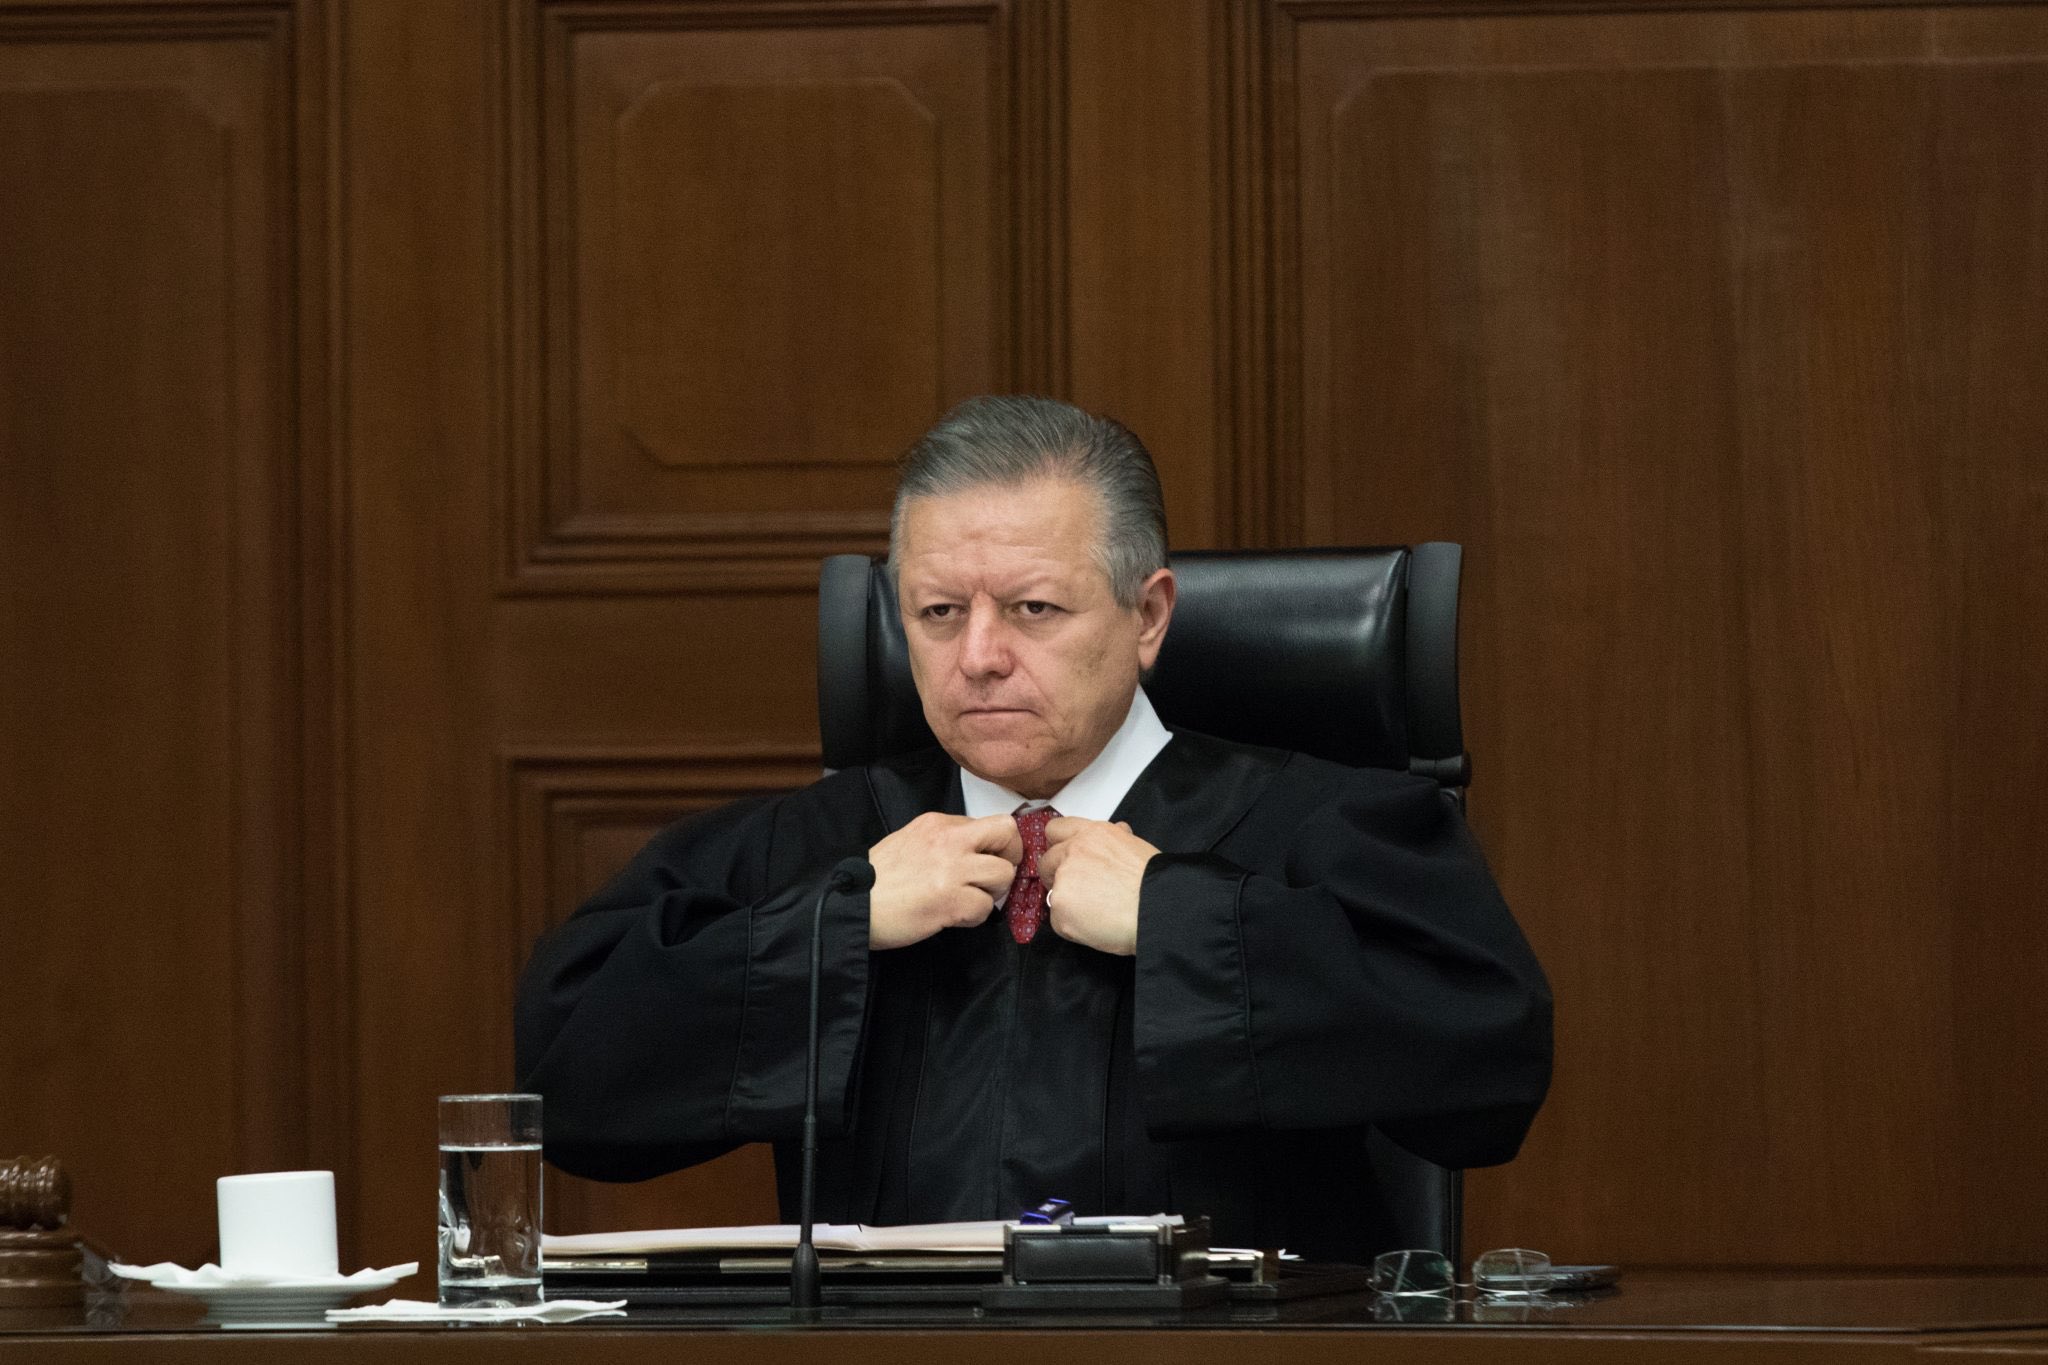 Equipo de Arturo Zaldívar acusado de presionar a jueces y magistrados